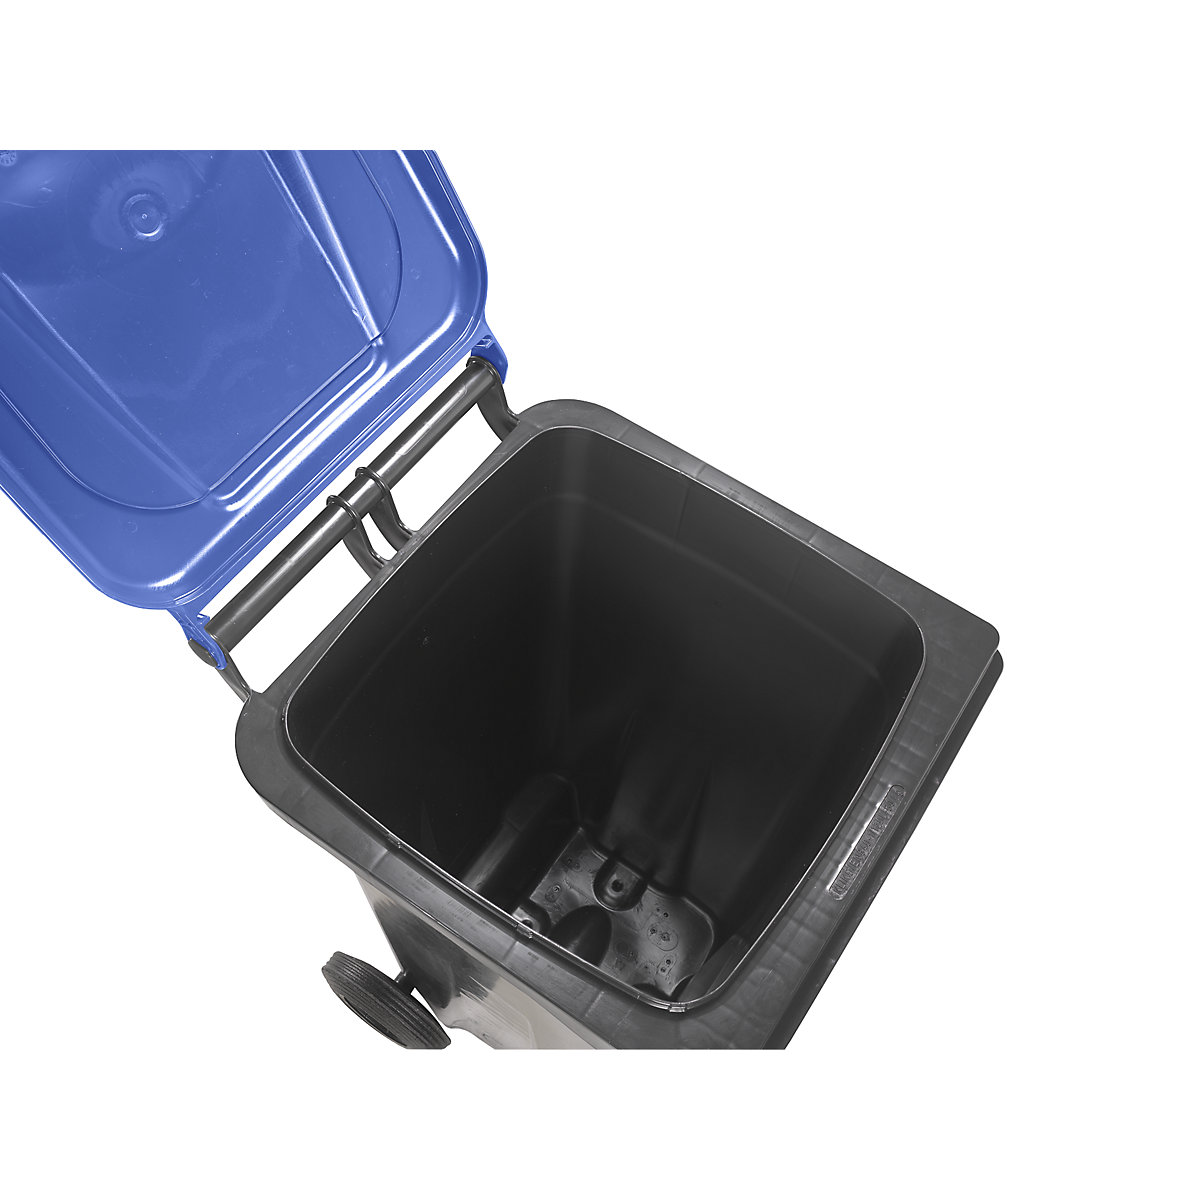 Waste bin to DIN EN 840 (Product illustration 12)-11